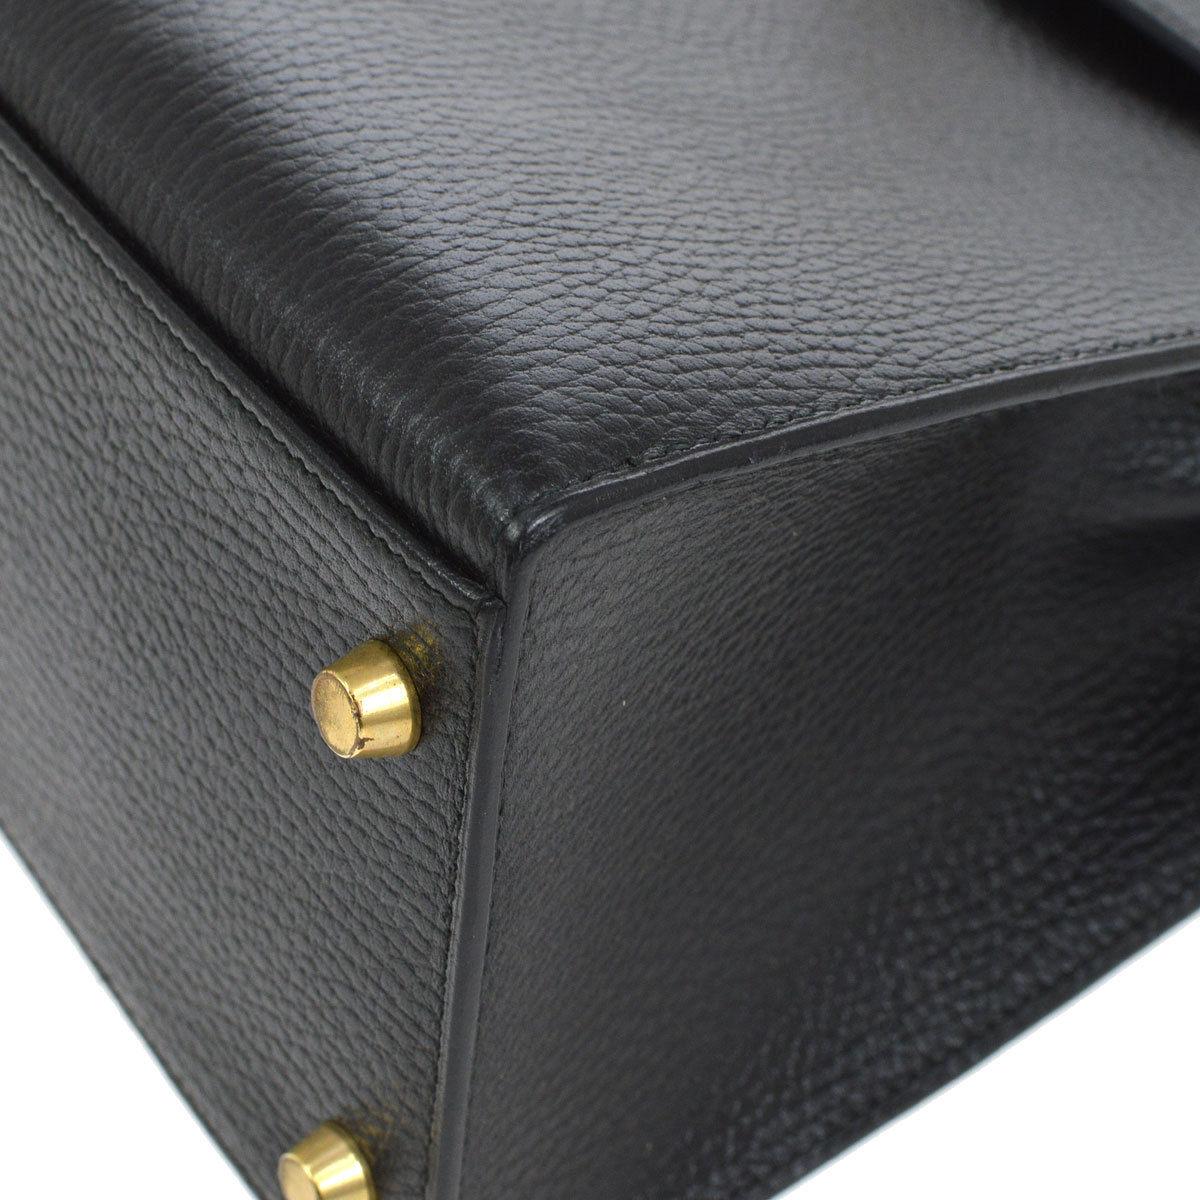 Hermes Kelly 32 Black Leather Gold Top Handle Satchel Shoulder Bag in Box 1